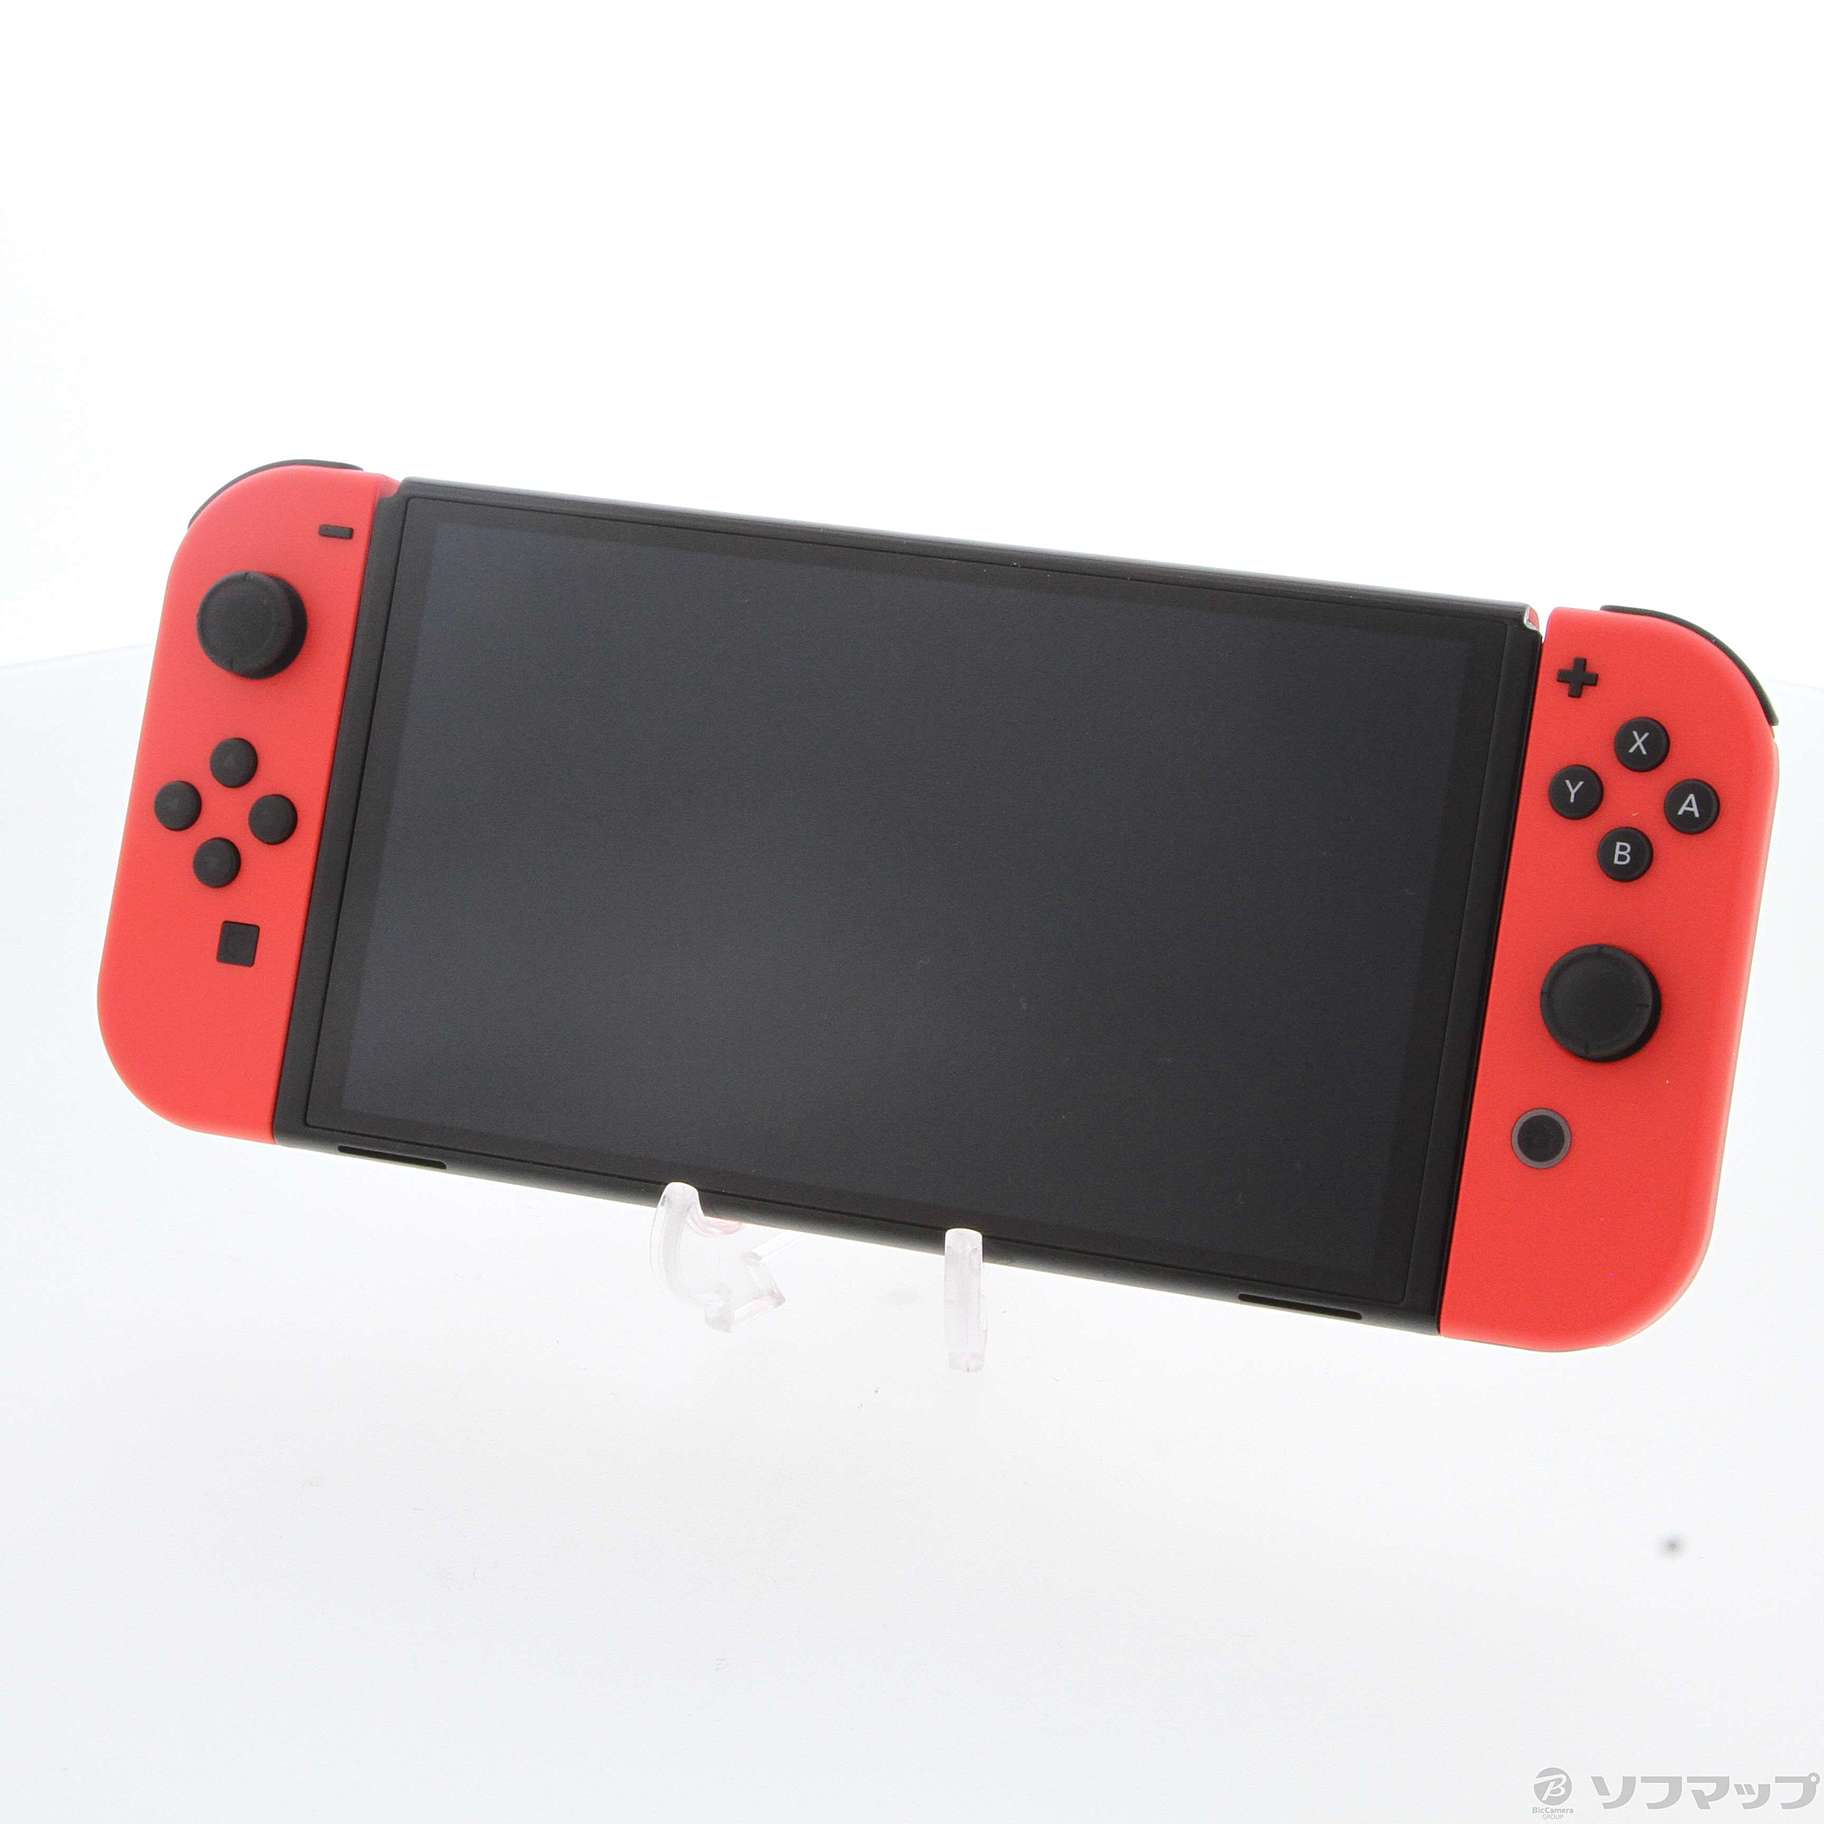 〔中古品〕 Nintendo Nintendo Switch 有機ELモデル マリオレッド